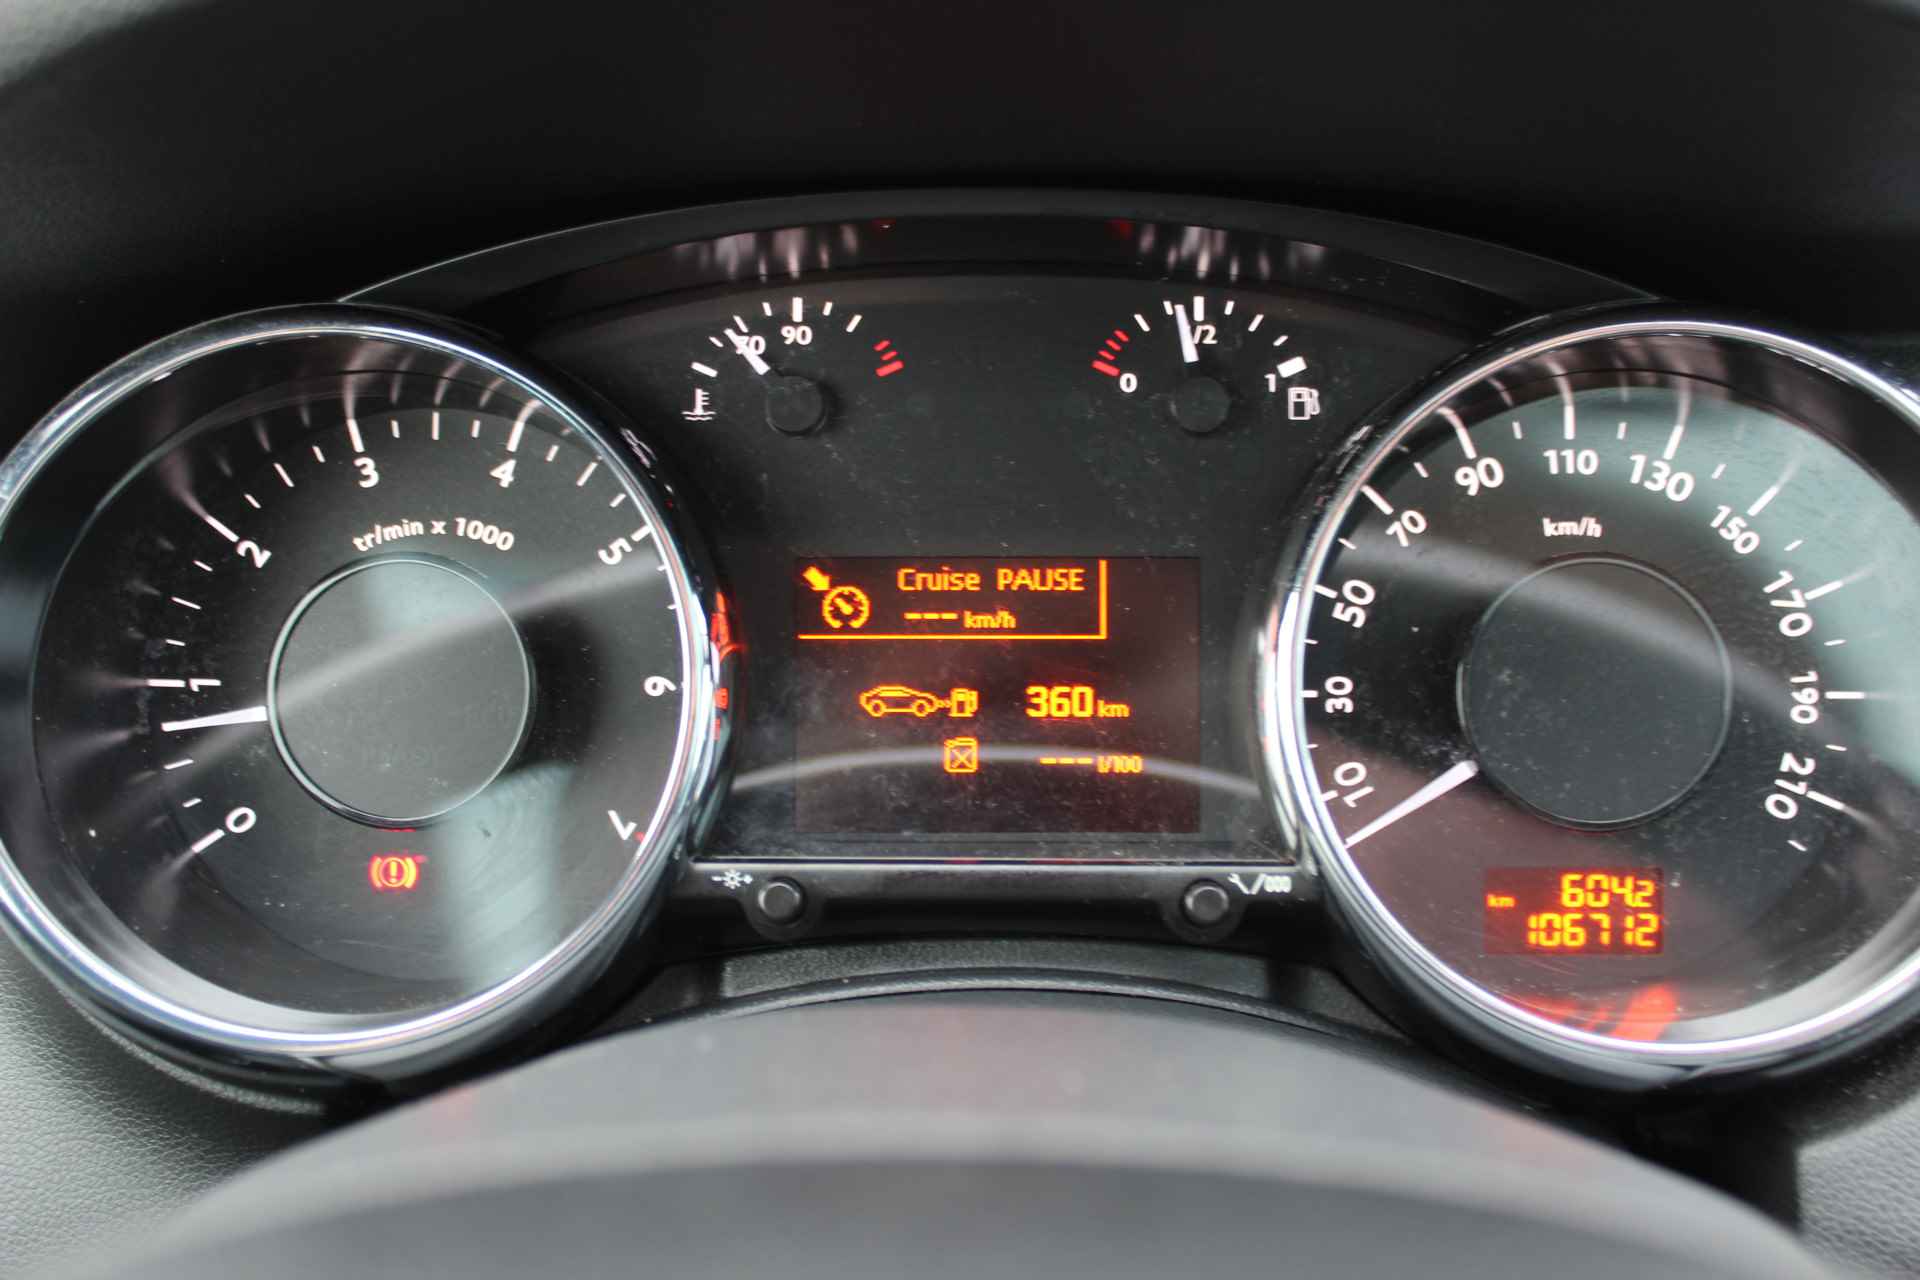 Peugeot 5008 1.6 THP Allure Trekhaak - Panoramadak met jalousie - Head-Up disp. - Navigatie Parkeer sensoren v+a - 17 Inch L.M. velgen - 18/47